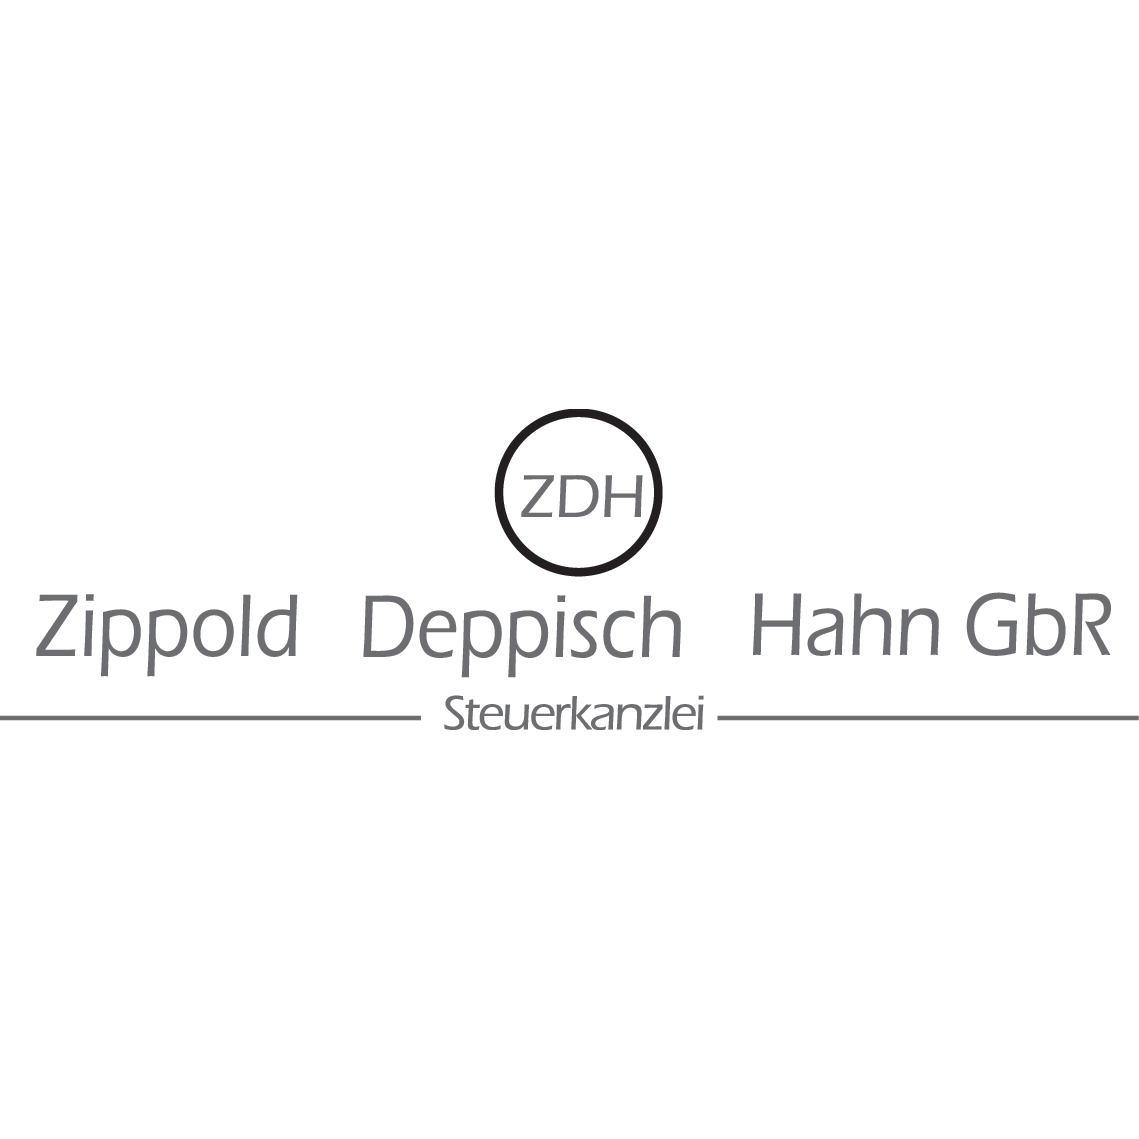 Logo Zippold Deppisch Hahn GbR - Steuerkanzlei